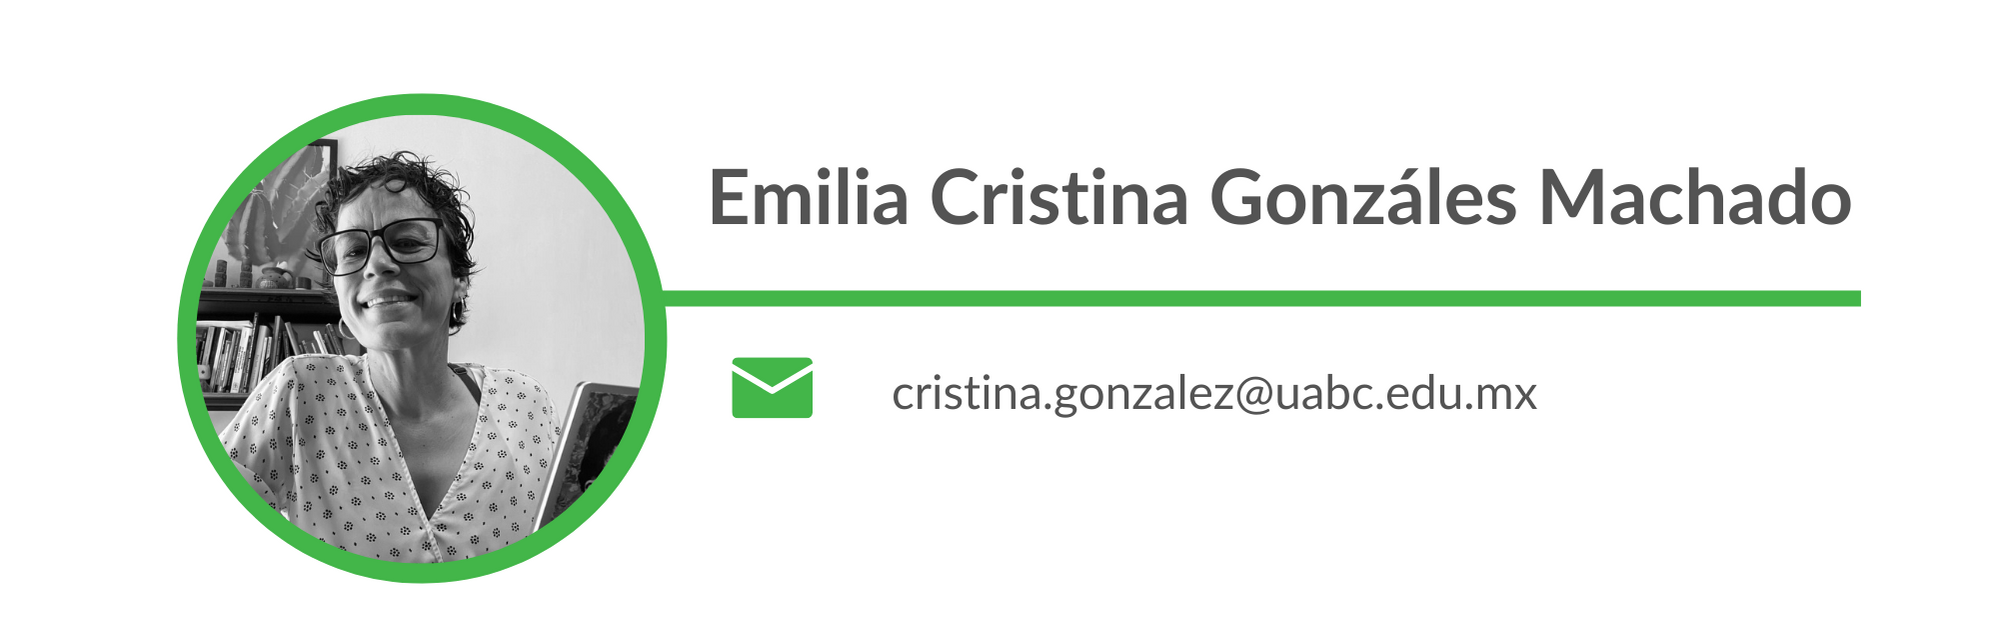 Emilia Cristina Gonzalez Machado. Email: cristina.gonzalez@uabc.edu.mx